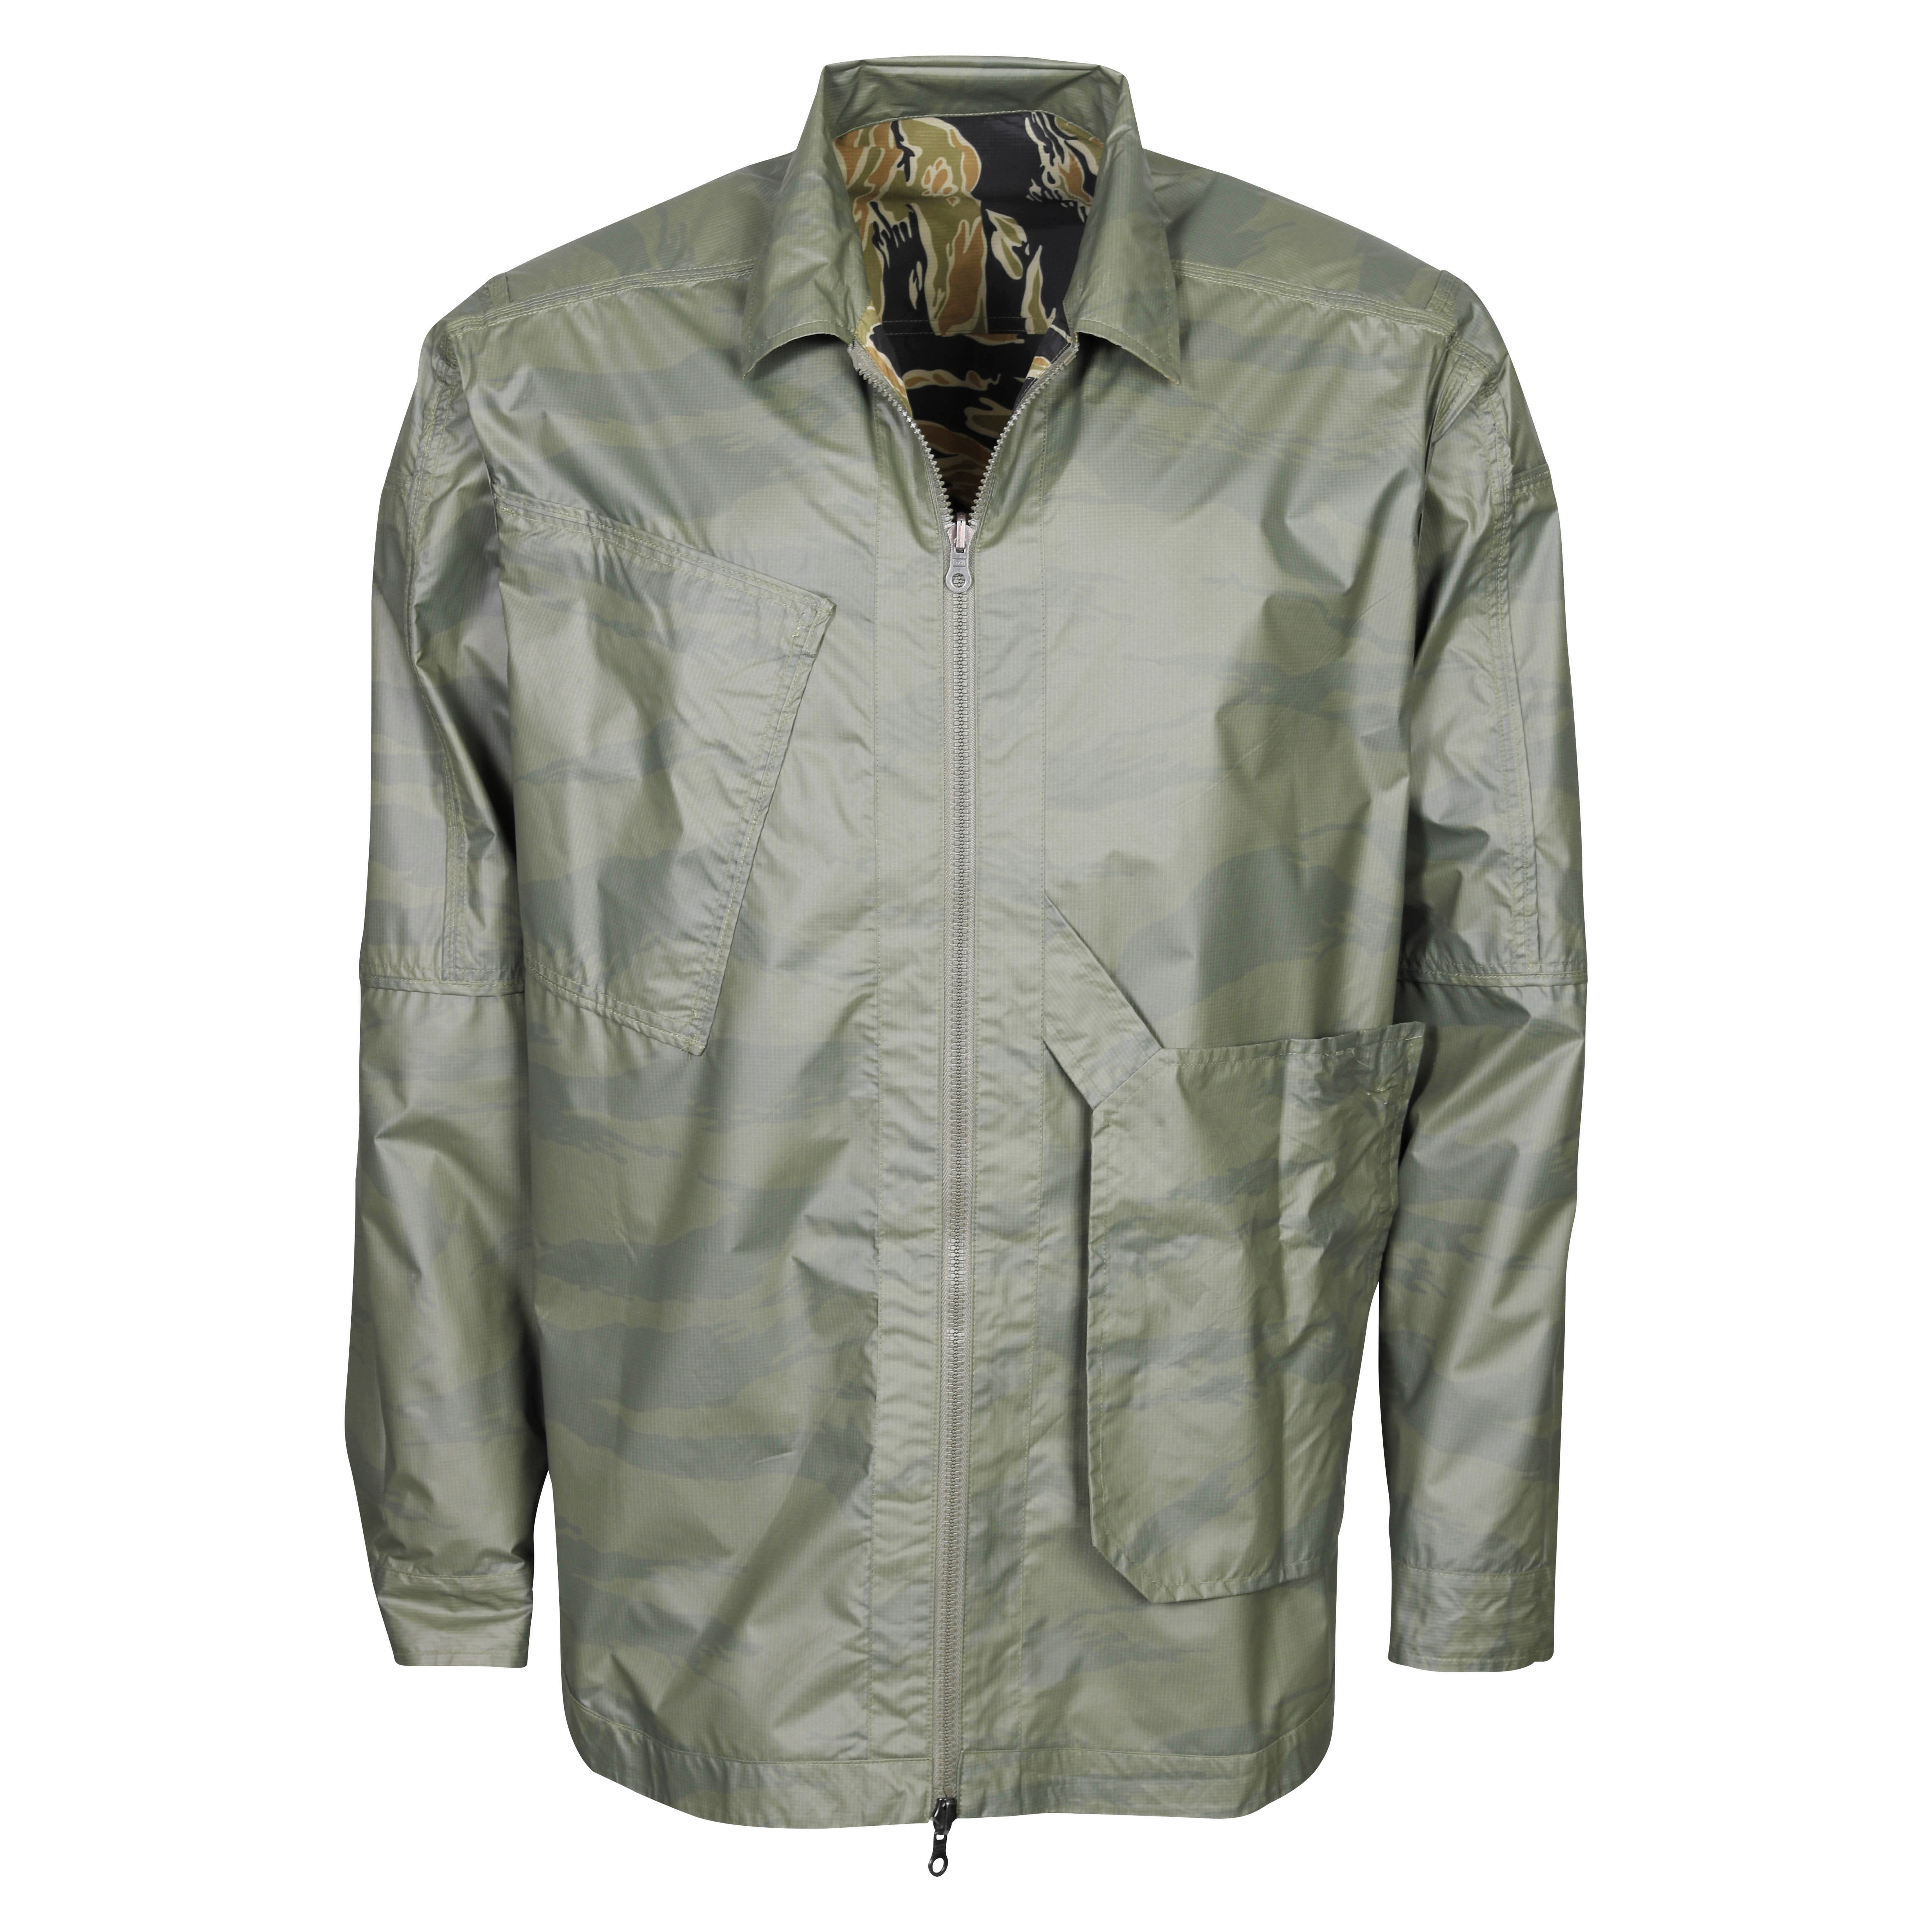 Maharishi Camo Reversible Packaway Shirt Jacket in Tigerstripe Olive S